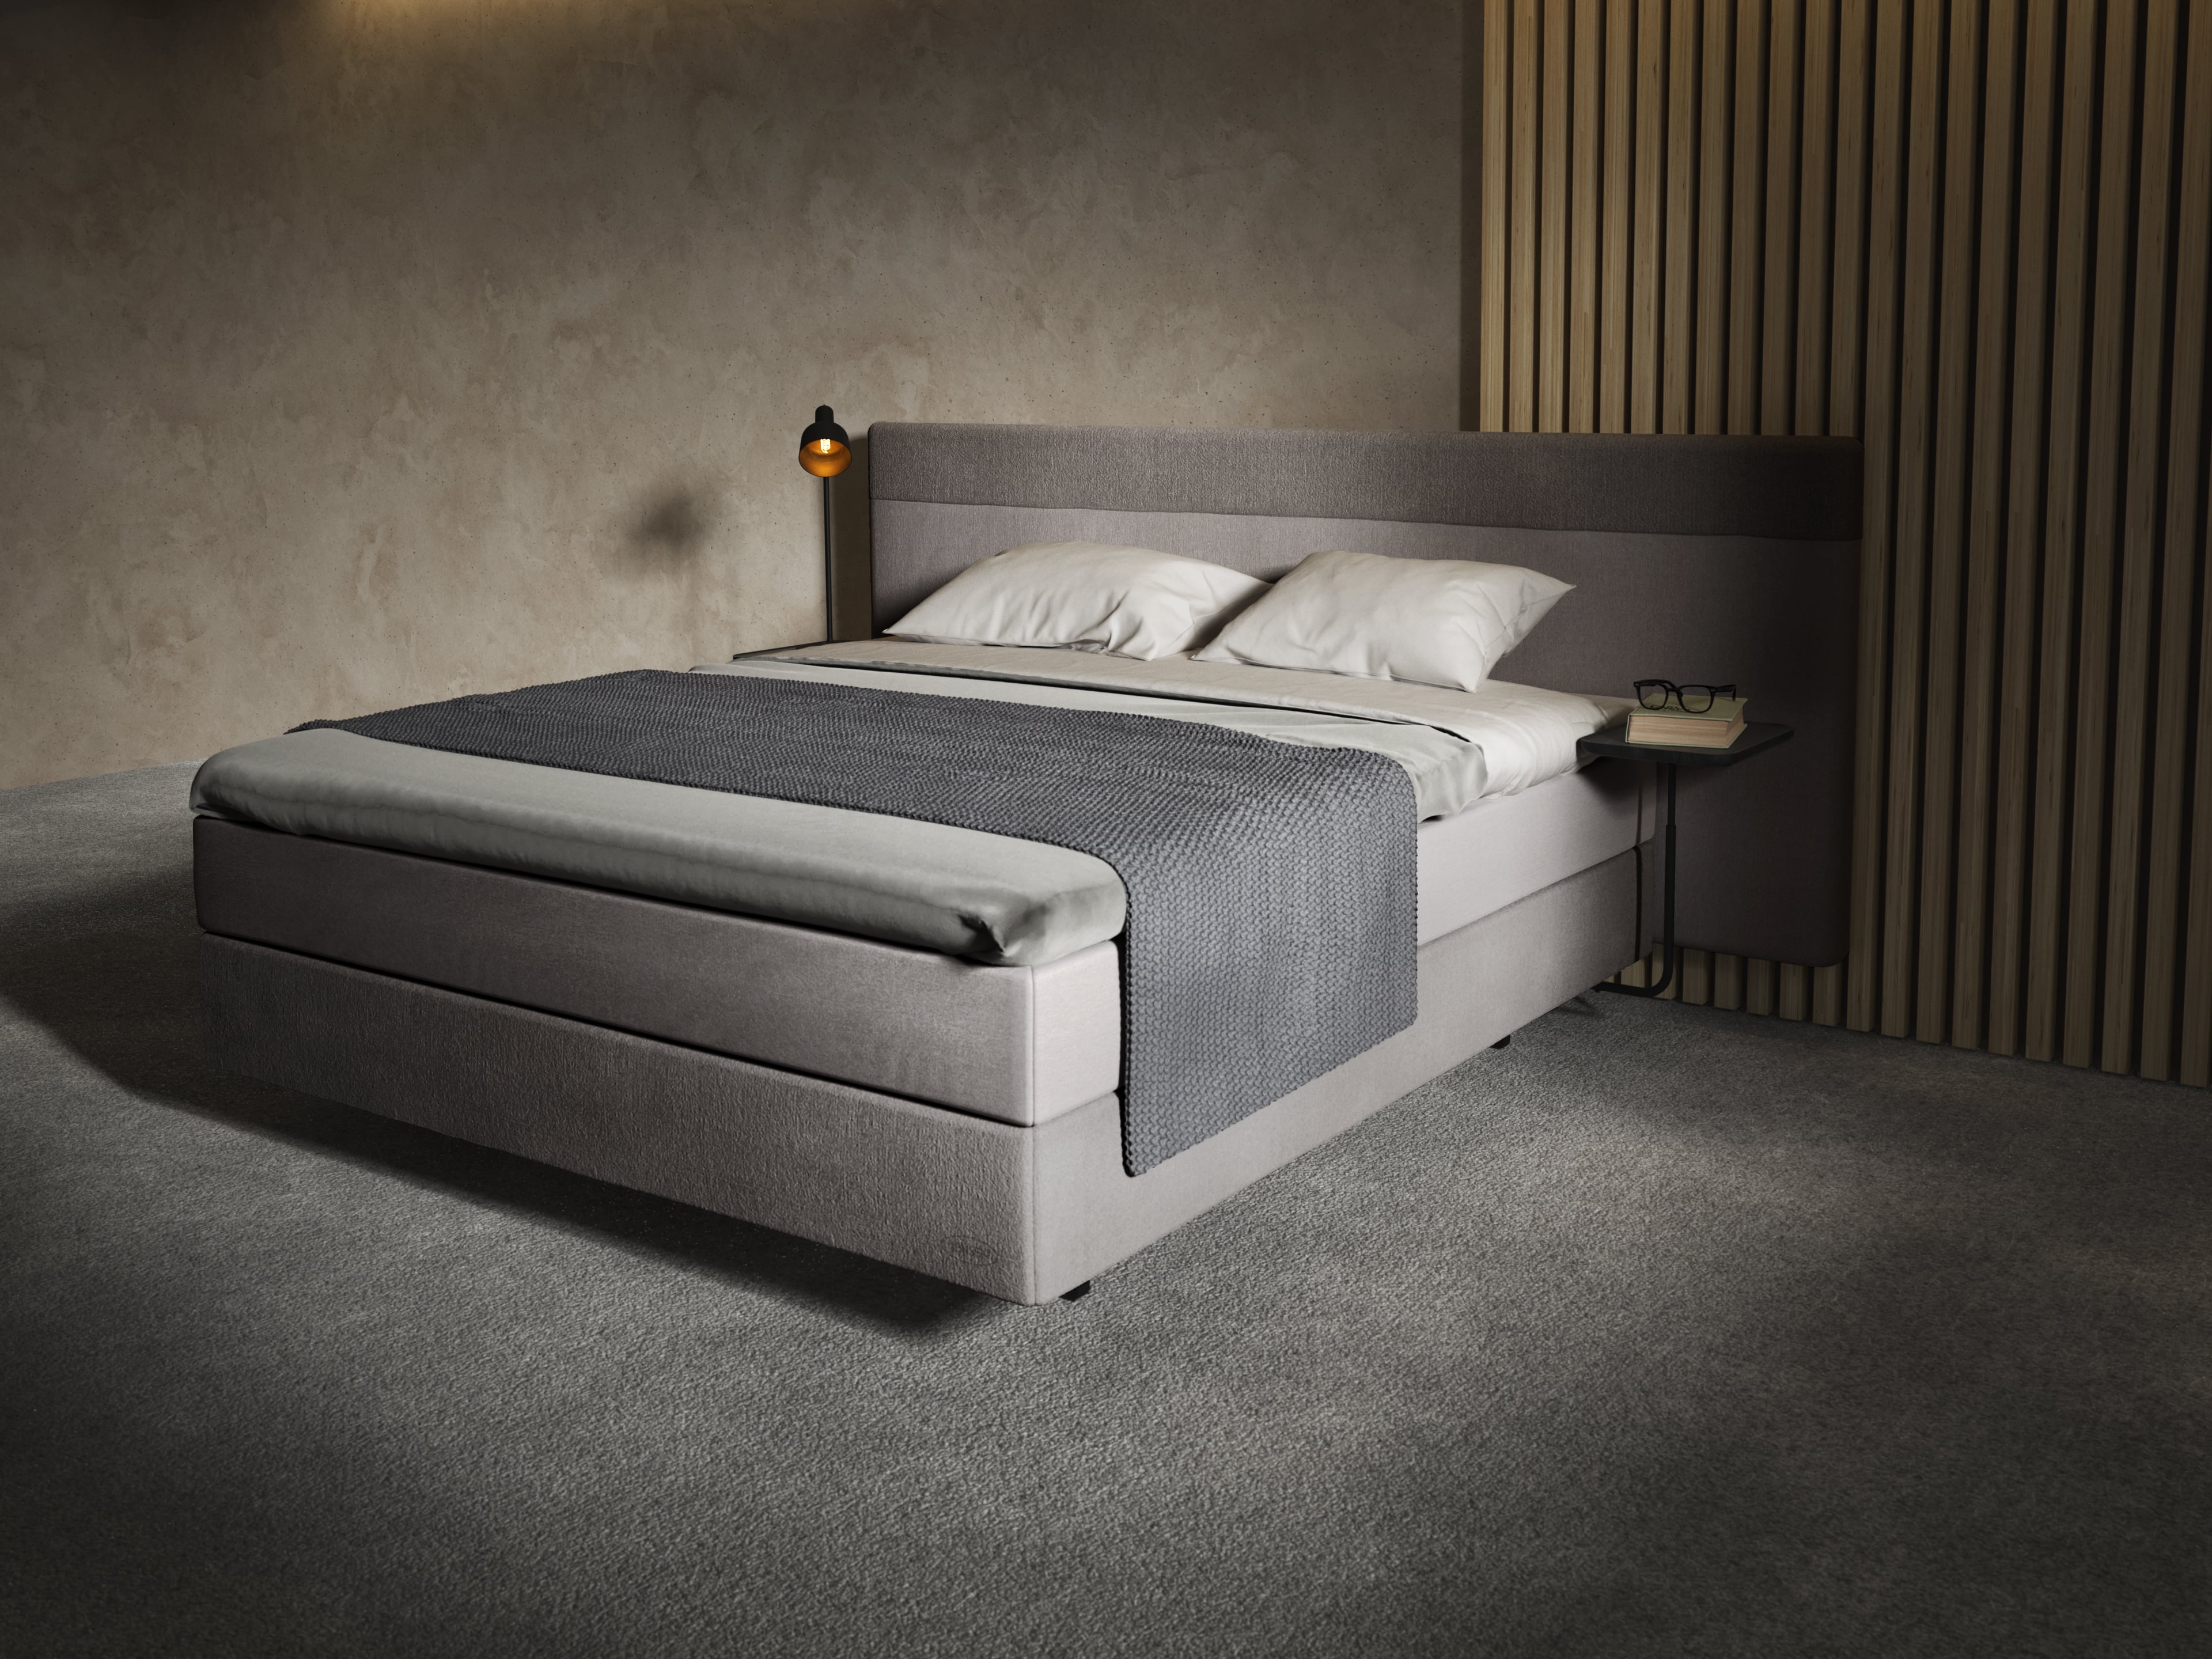 Luxury bed grey jensen bed